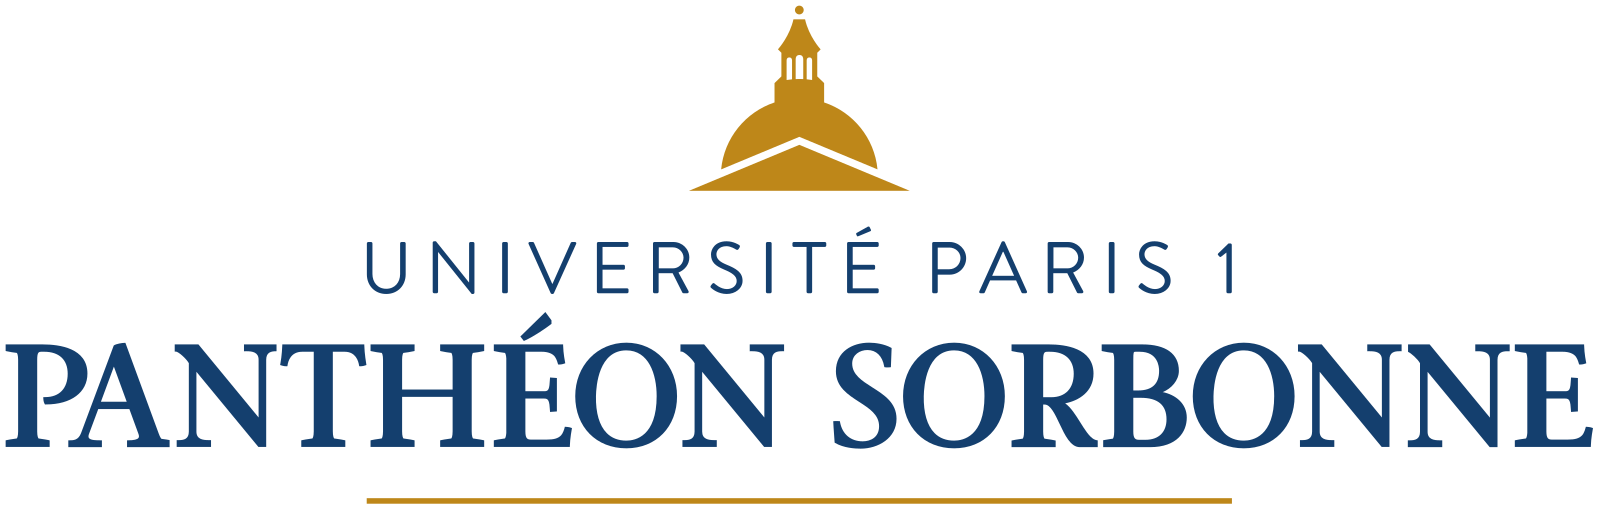 Université Paris 1 Panthéon-Sorbonne Logo